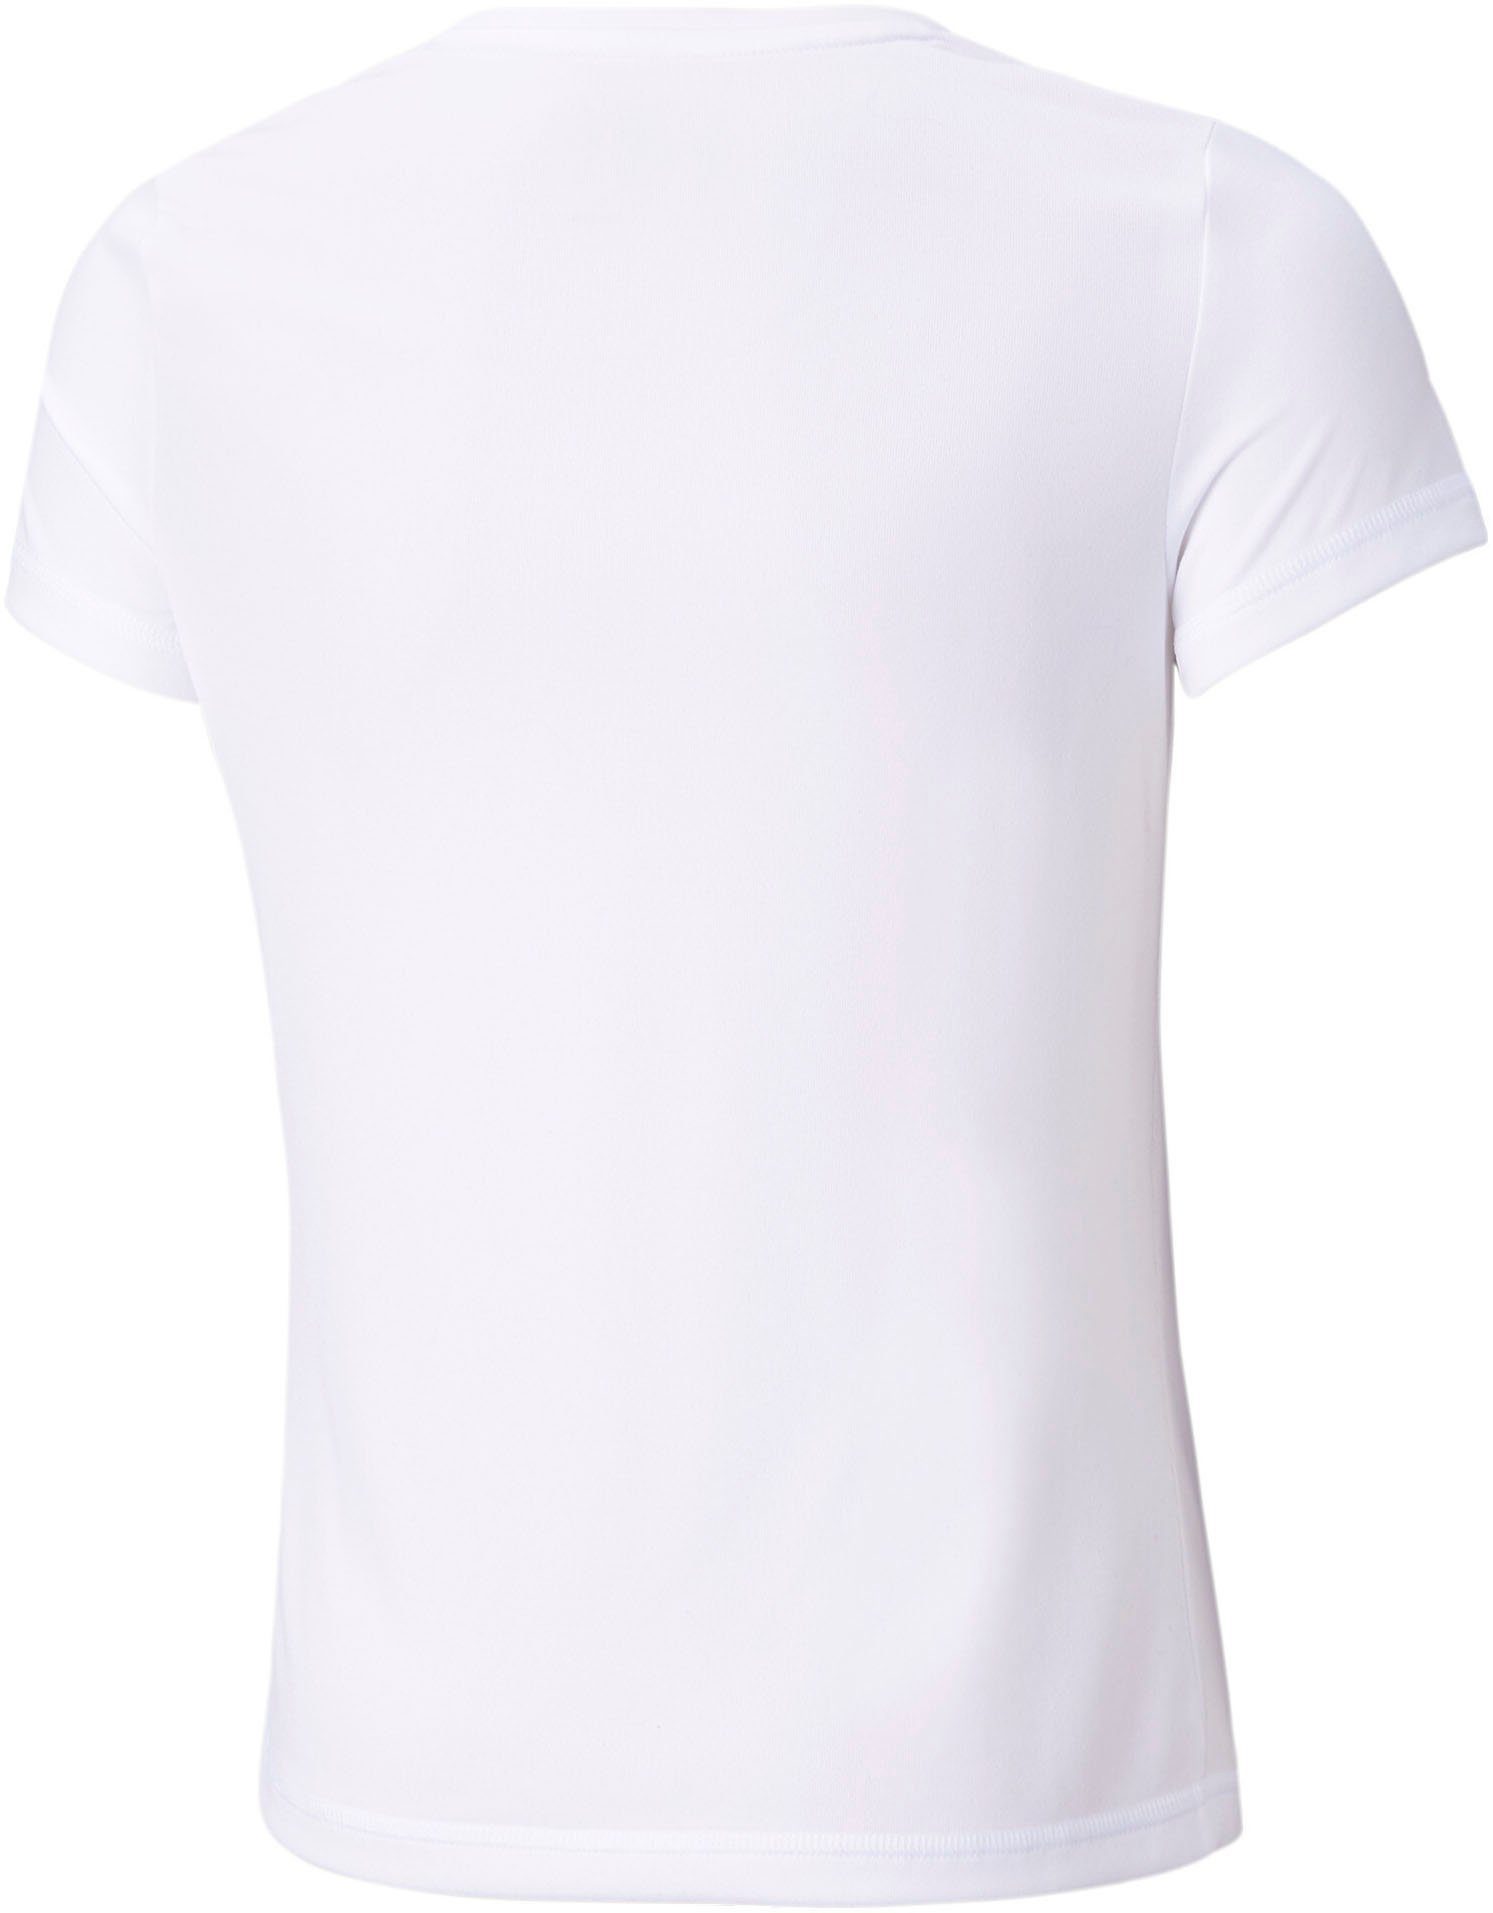 PUMA T-Shirt ACTIVE TEE G White Puma